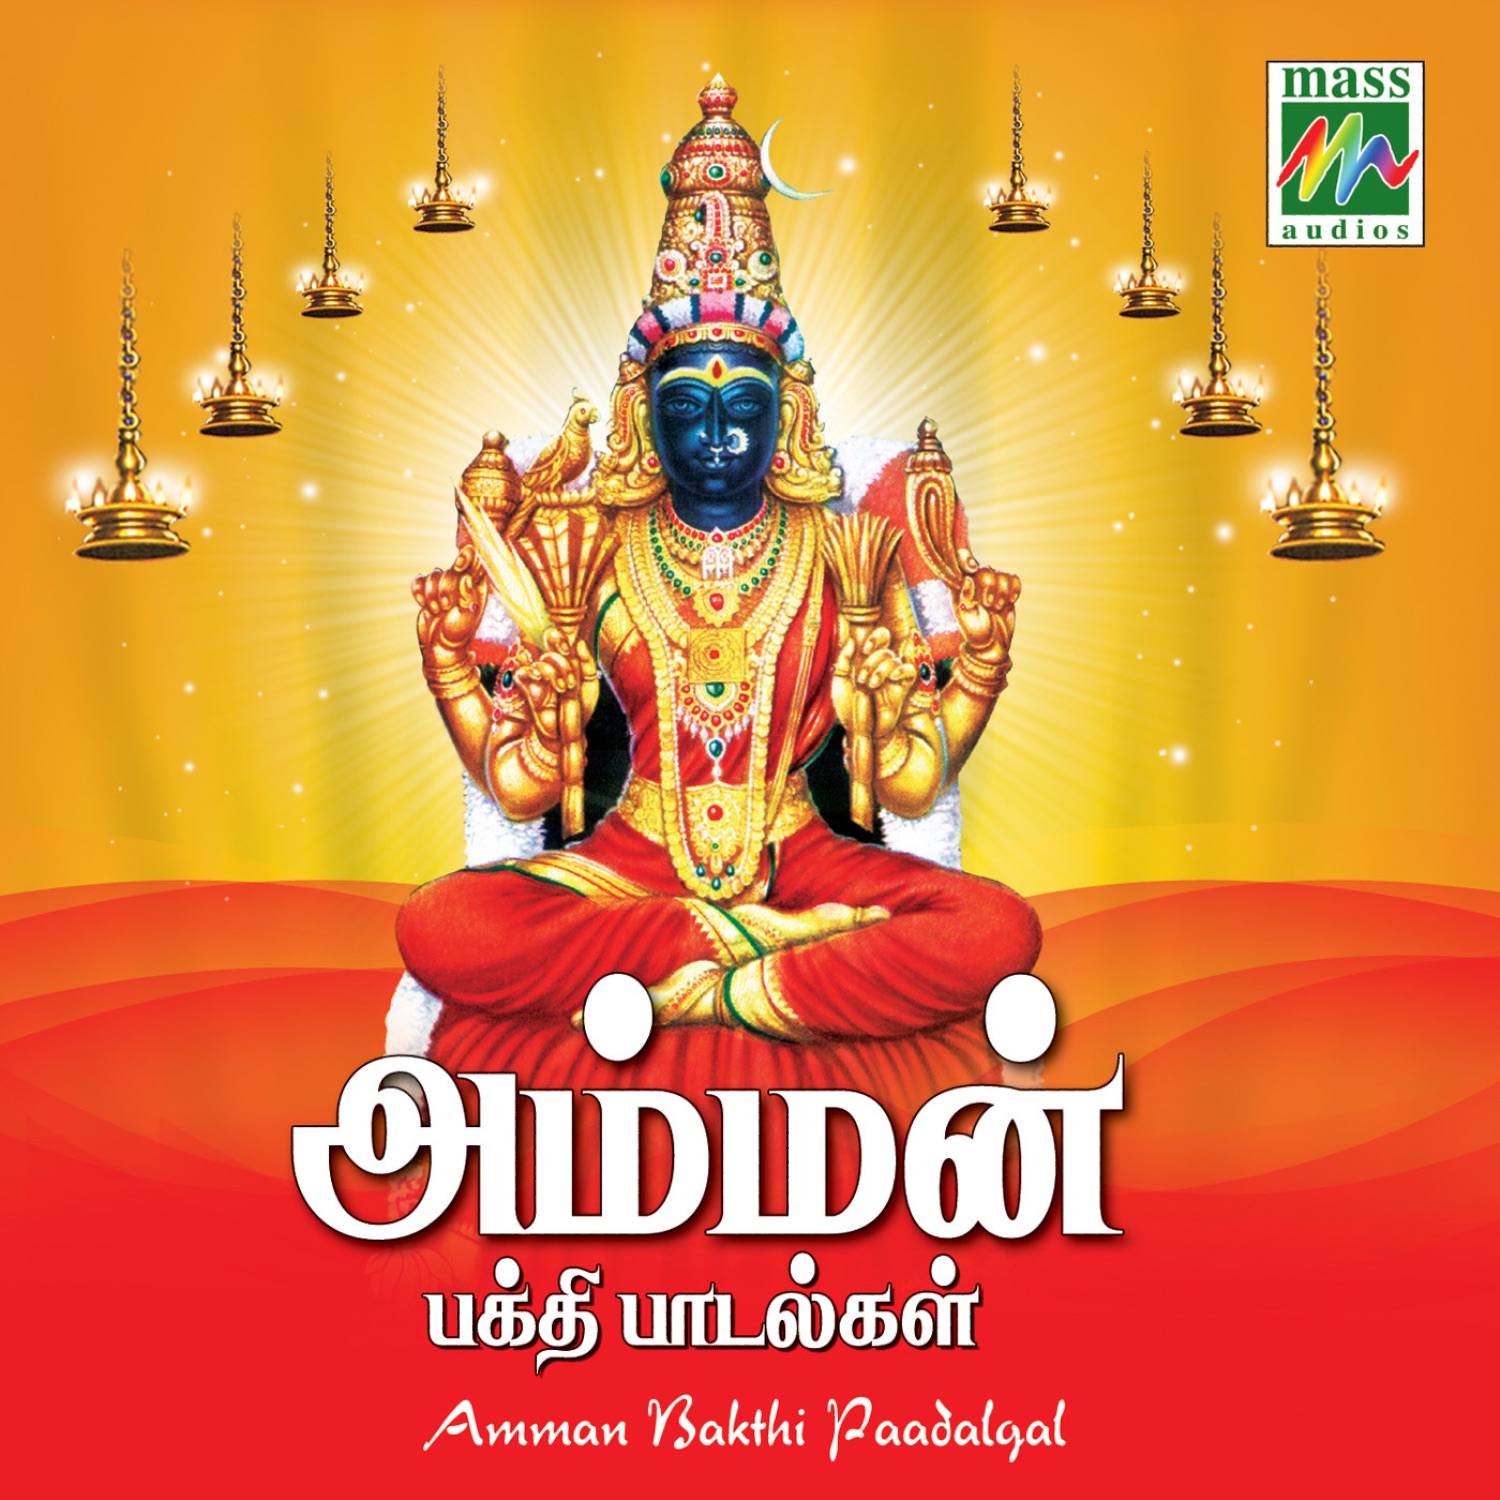 prashanth mp3 download